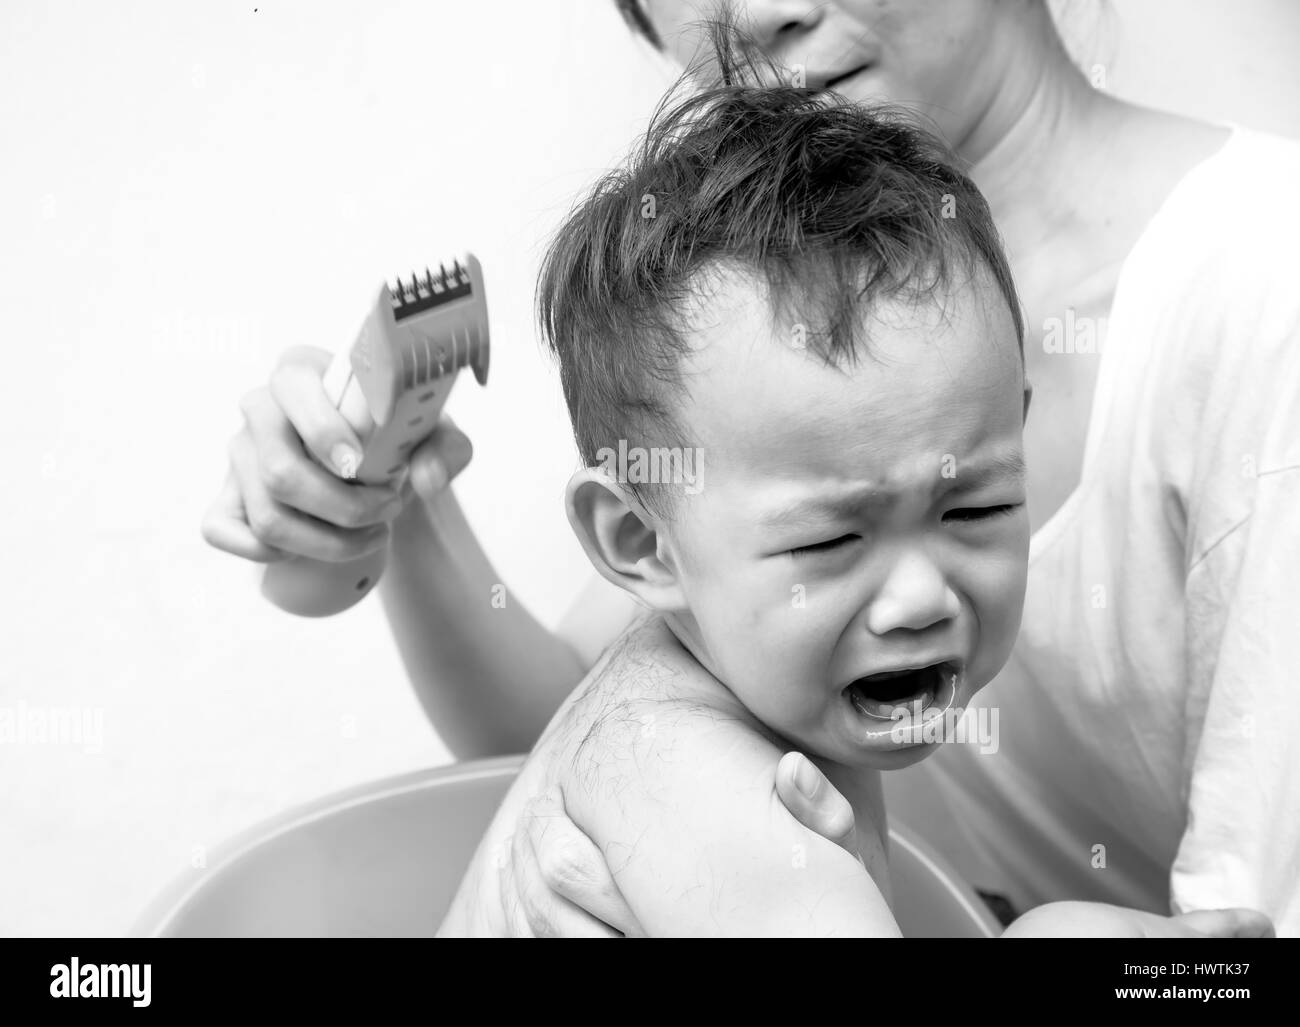 La Peur Peur De Se Sentir Bebe Thai Tondeuse Cheveux Coupe De Cheveux De Sa Mere Lorsque Photo Stock Alamy